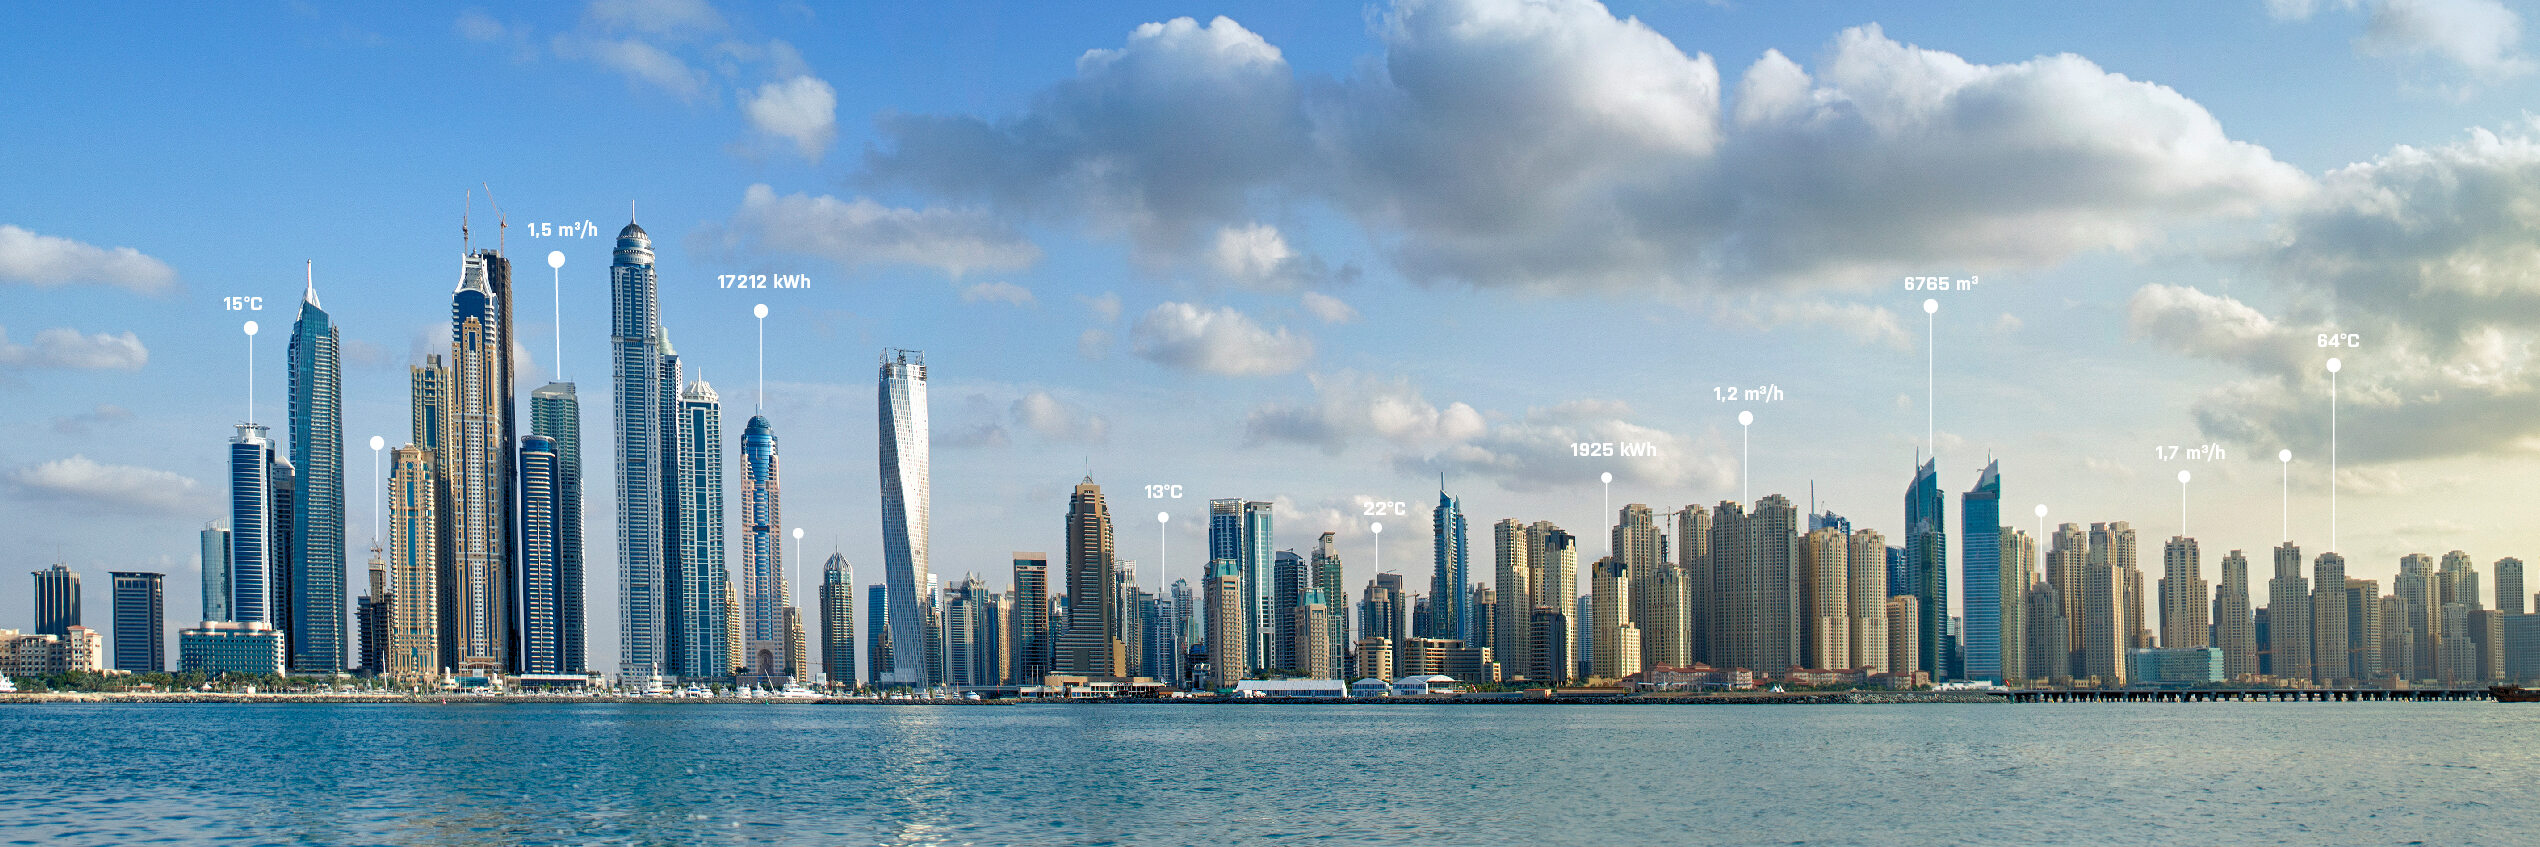 迪拜:我们不断扩大的区域中心